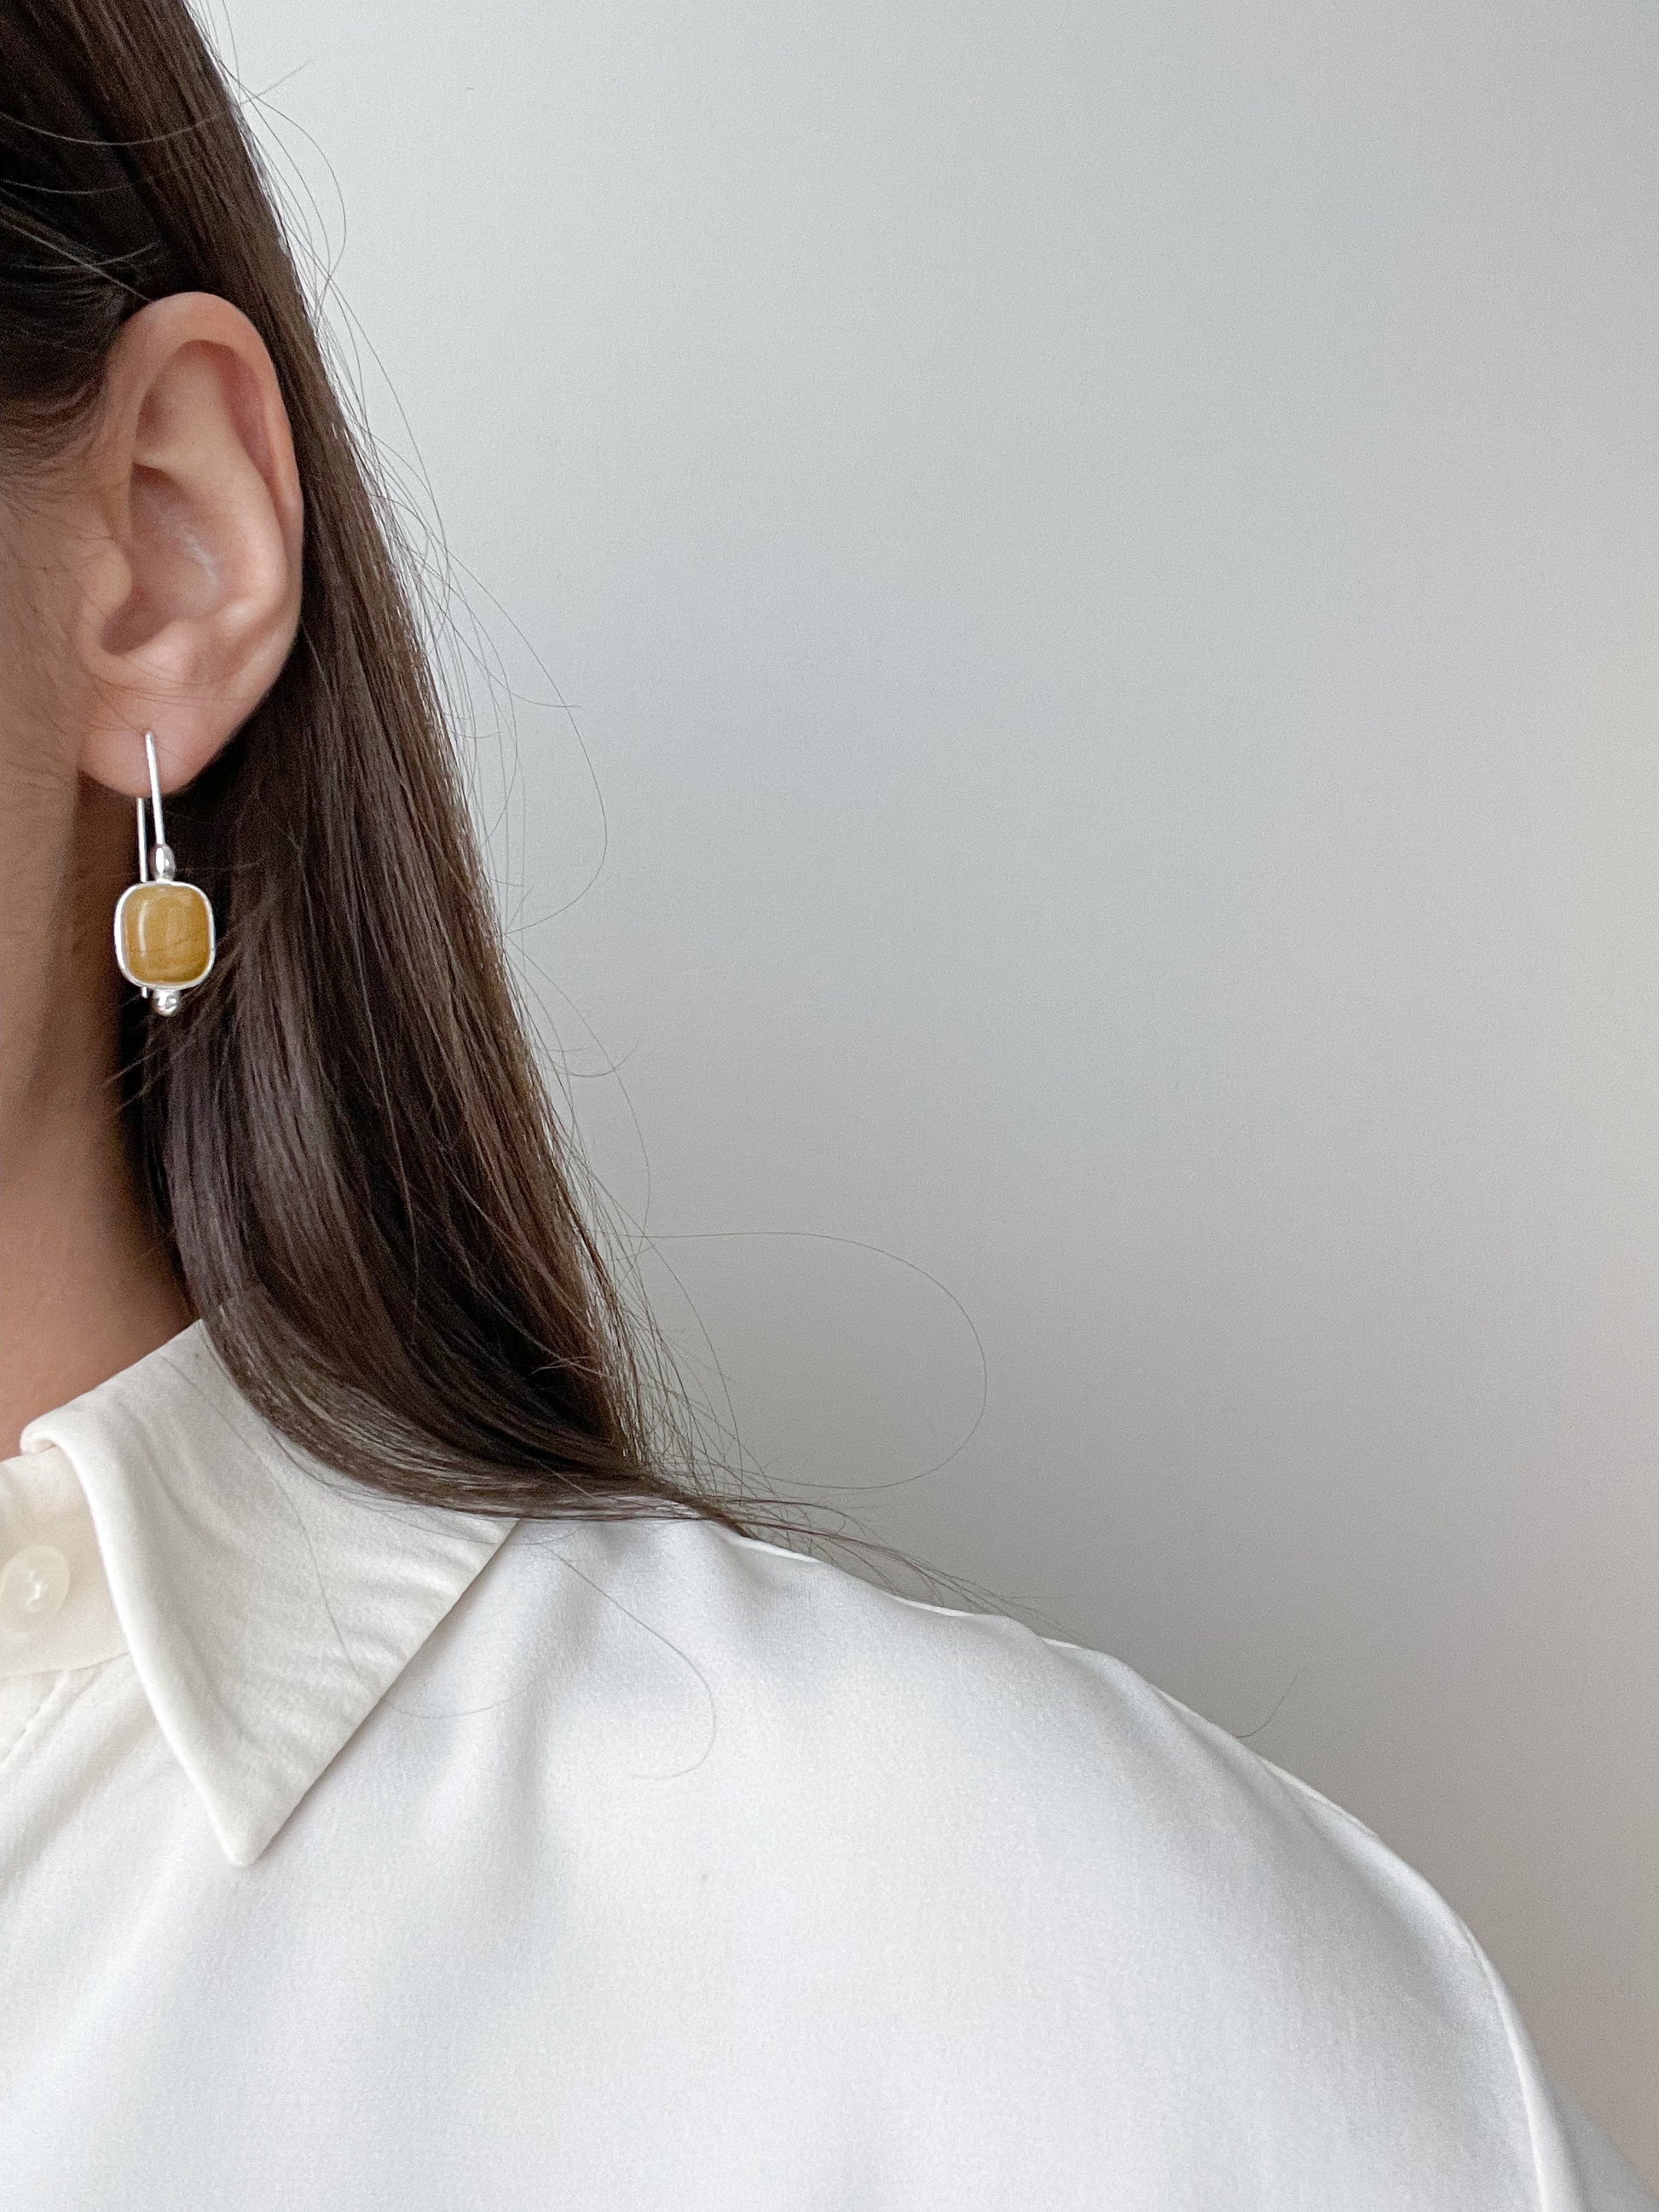 Honey amber dangle earrings - Sterling siHoney dangle earrings - Sterling silver - Hook earring collectionlver - Hook earrings collection